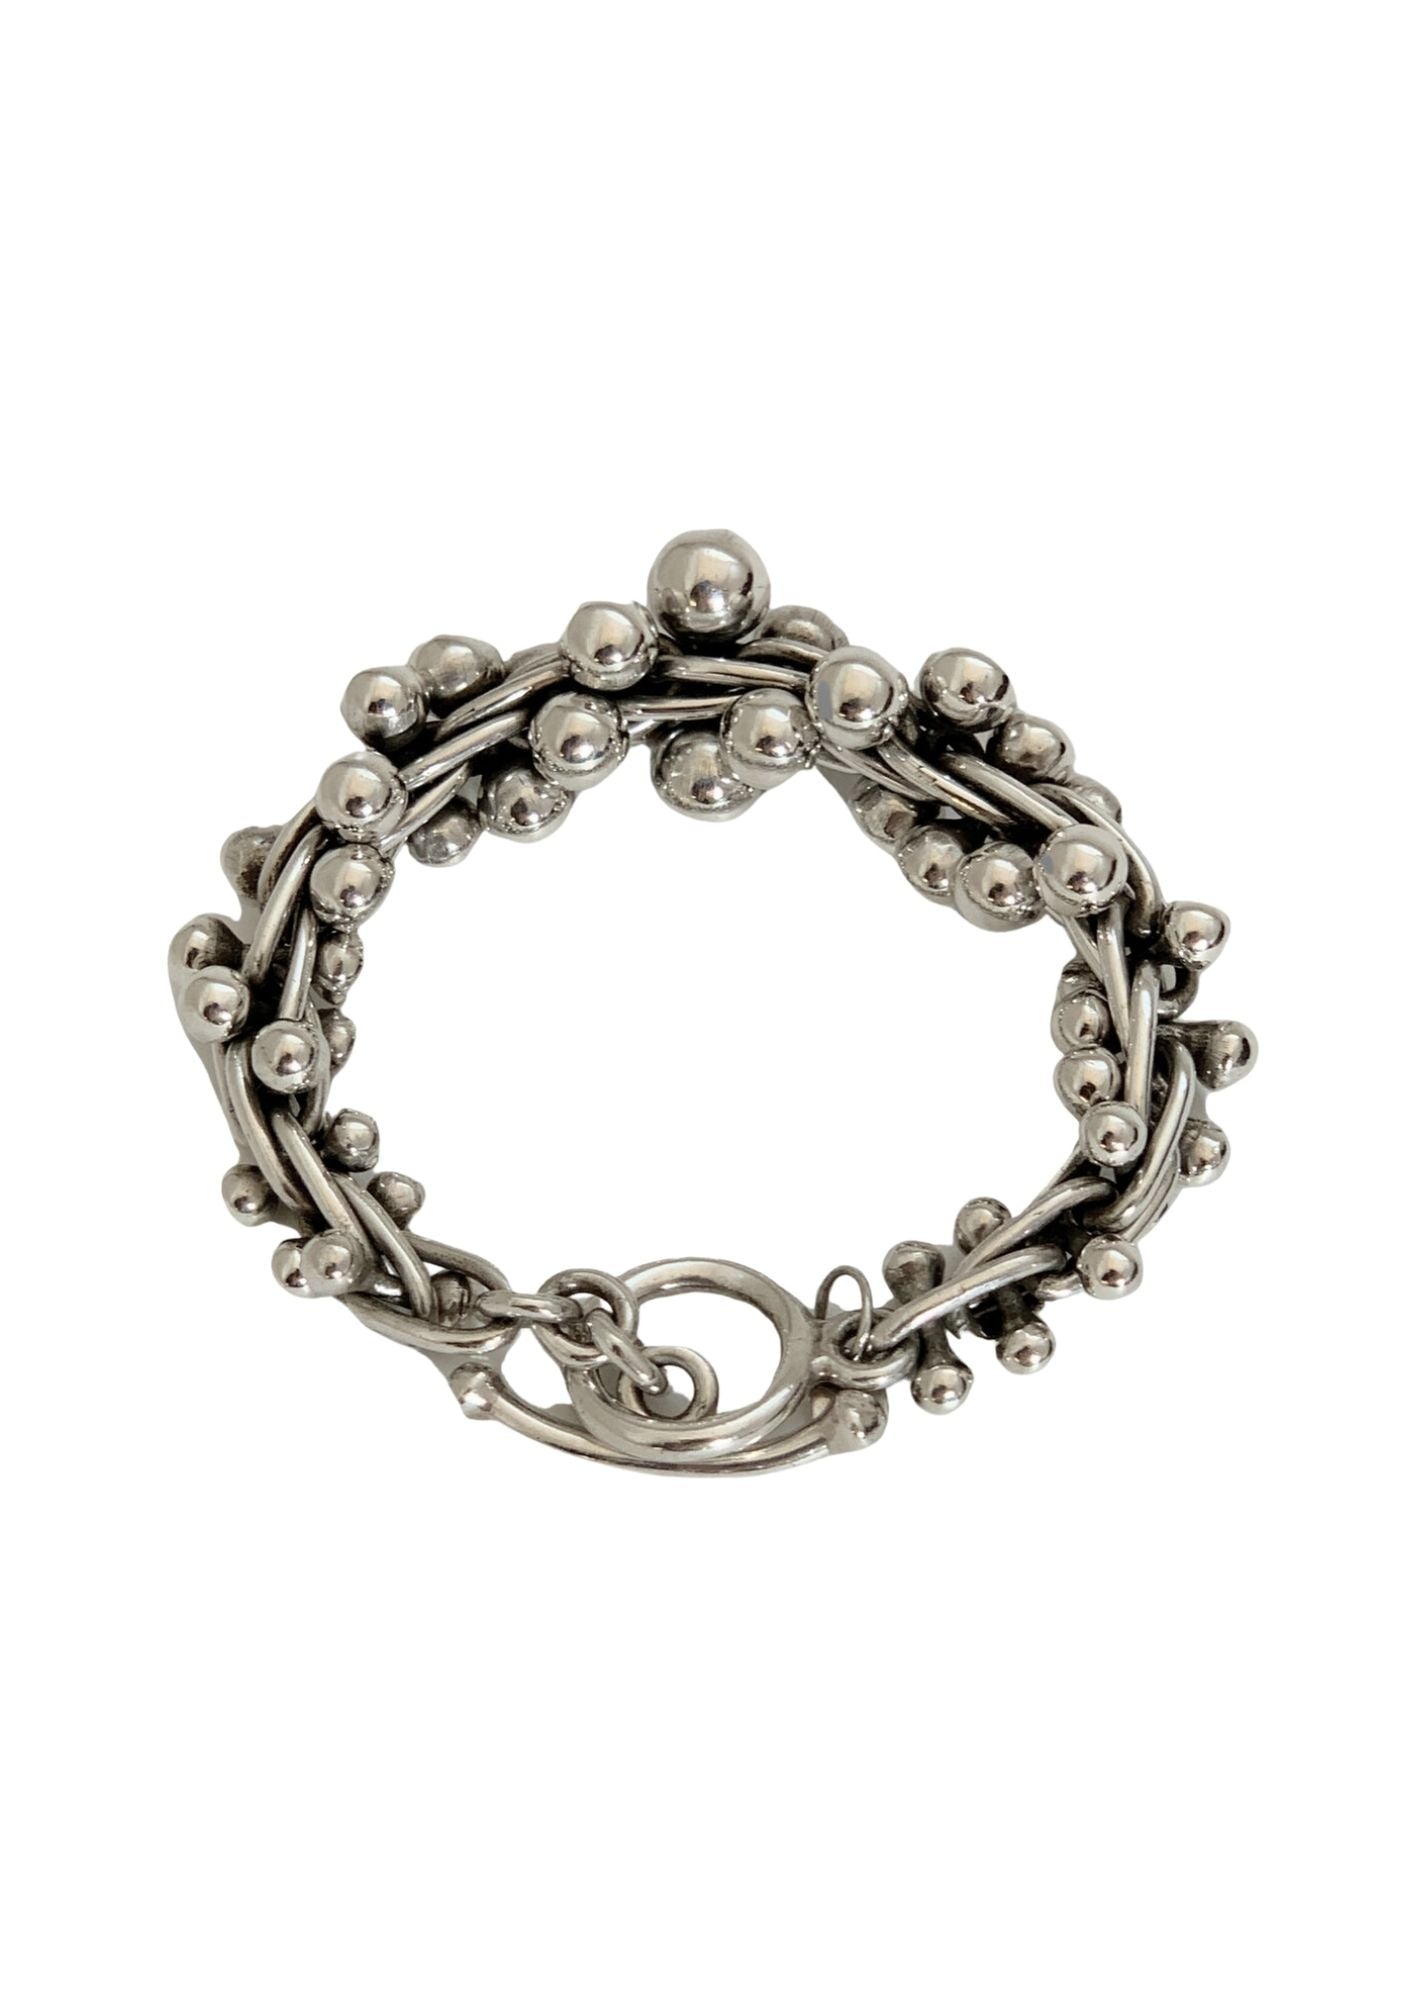 Vintage Sterling Silver DNA Bracelet - ブレスレット